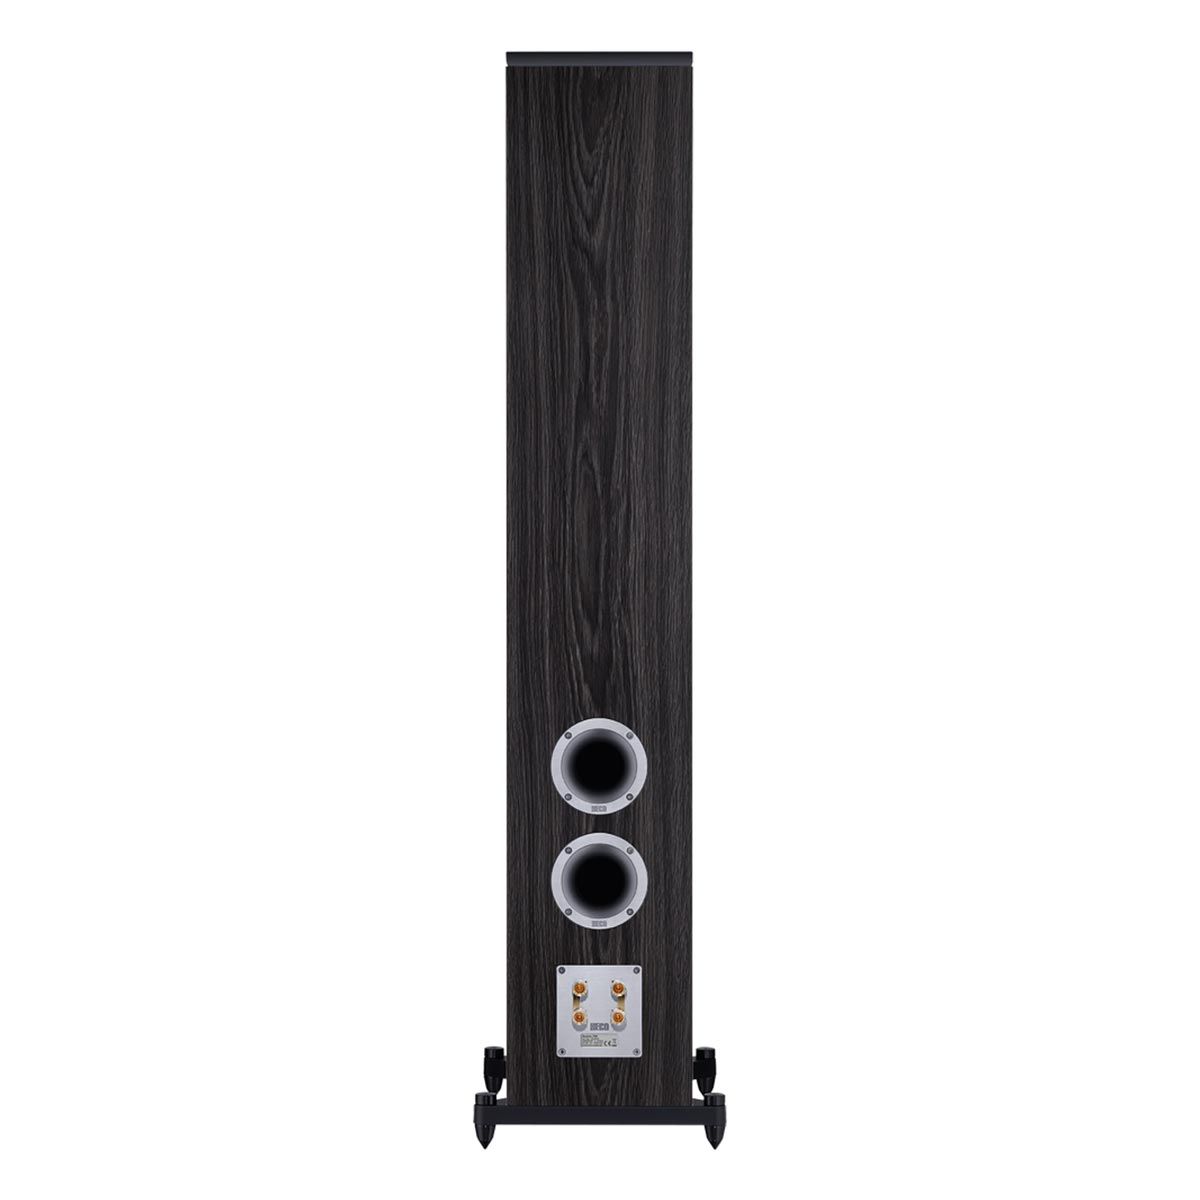 HECO Aurora 700 Floorstanding Speaker back - black